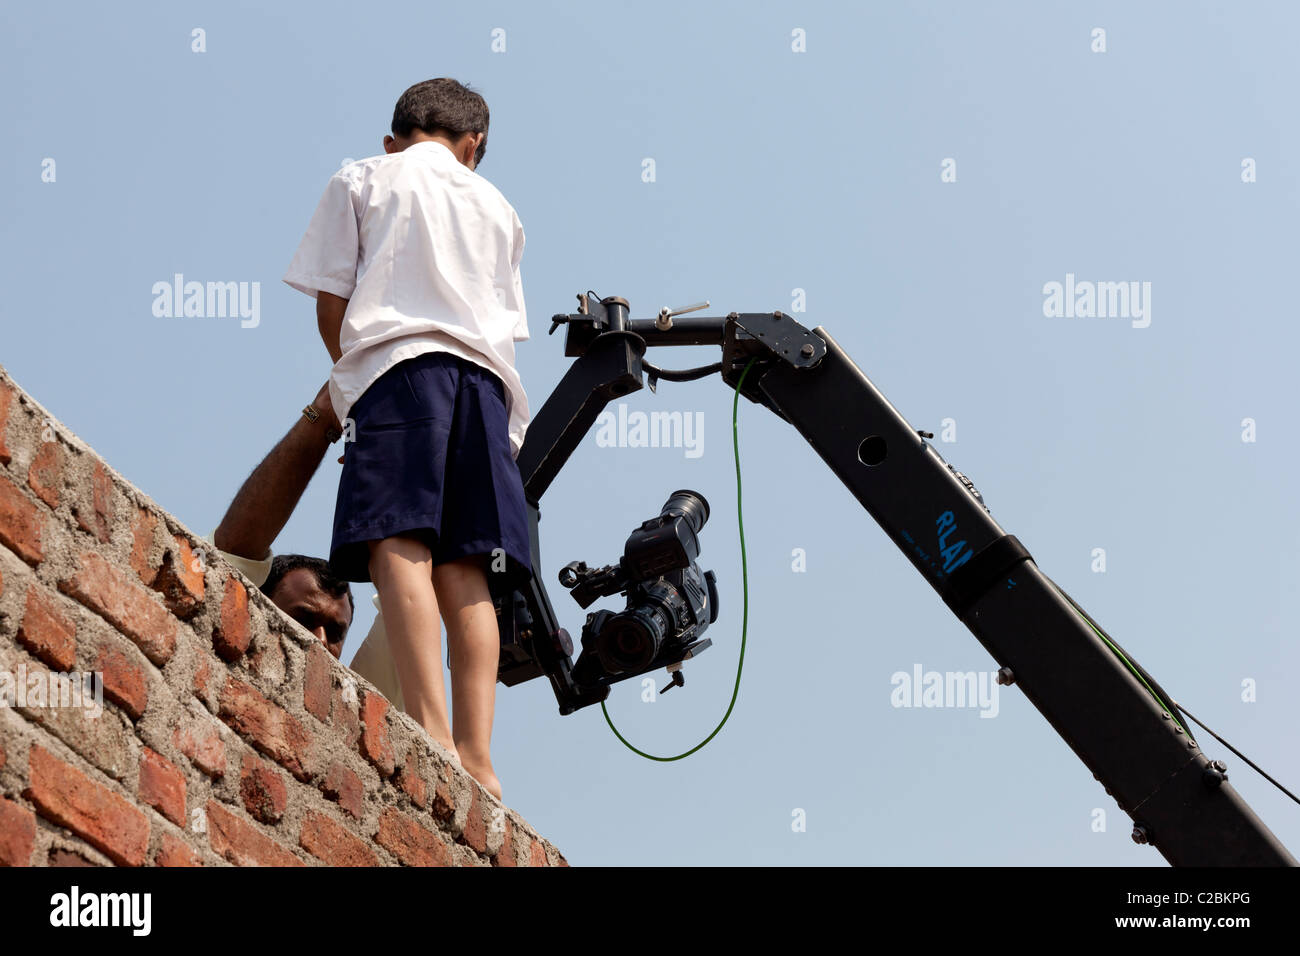 Un garçon acteur pour une photo d'action à l'aide d'une caméra sur grue Jimmy Jib tournage un emplacement Banque D'Images